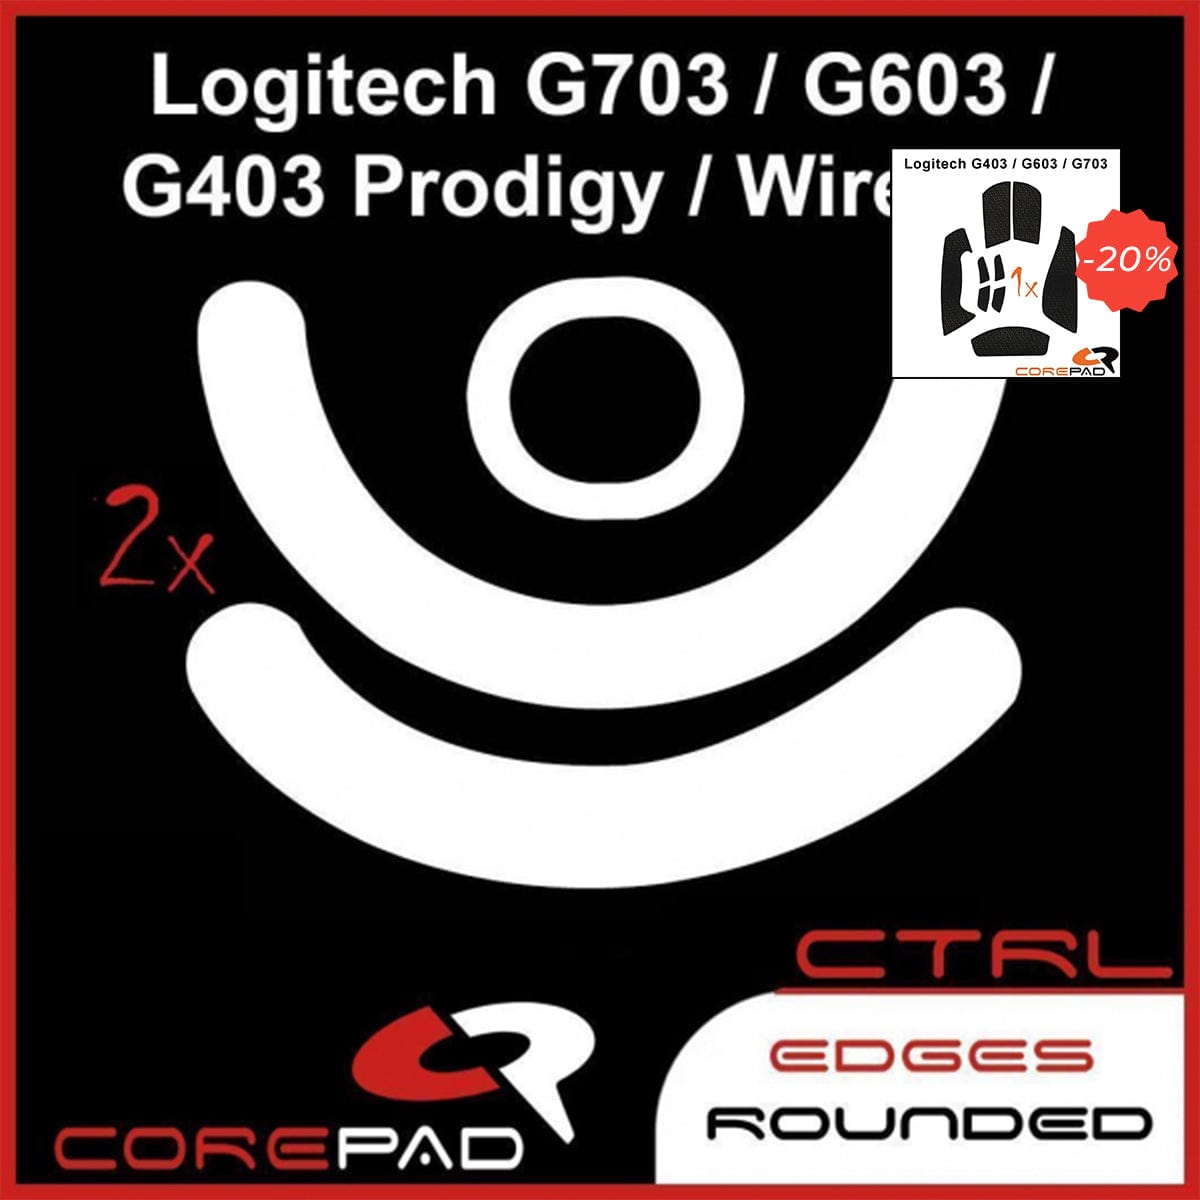 Bundle Feet + Grip tape Corepad - Logitech G703/G603/G403